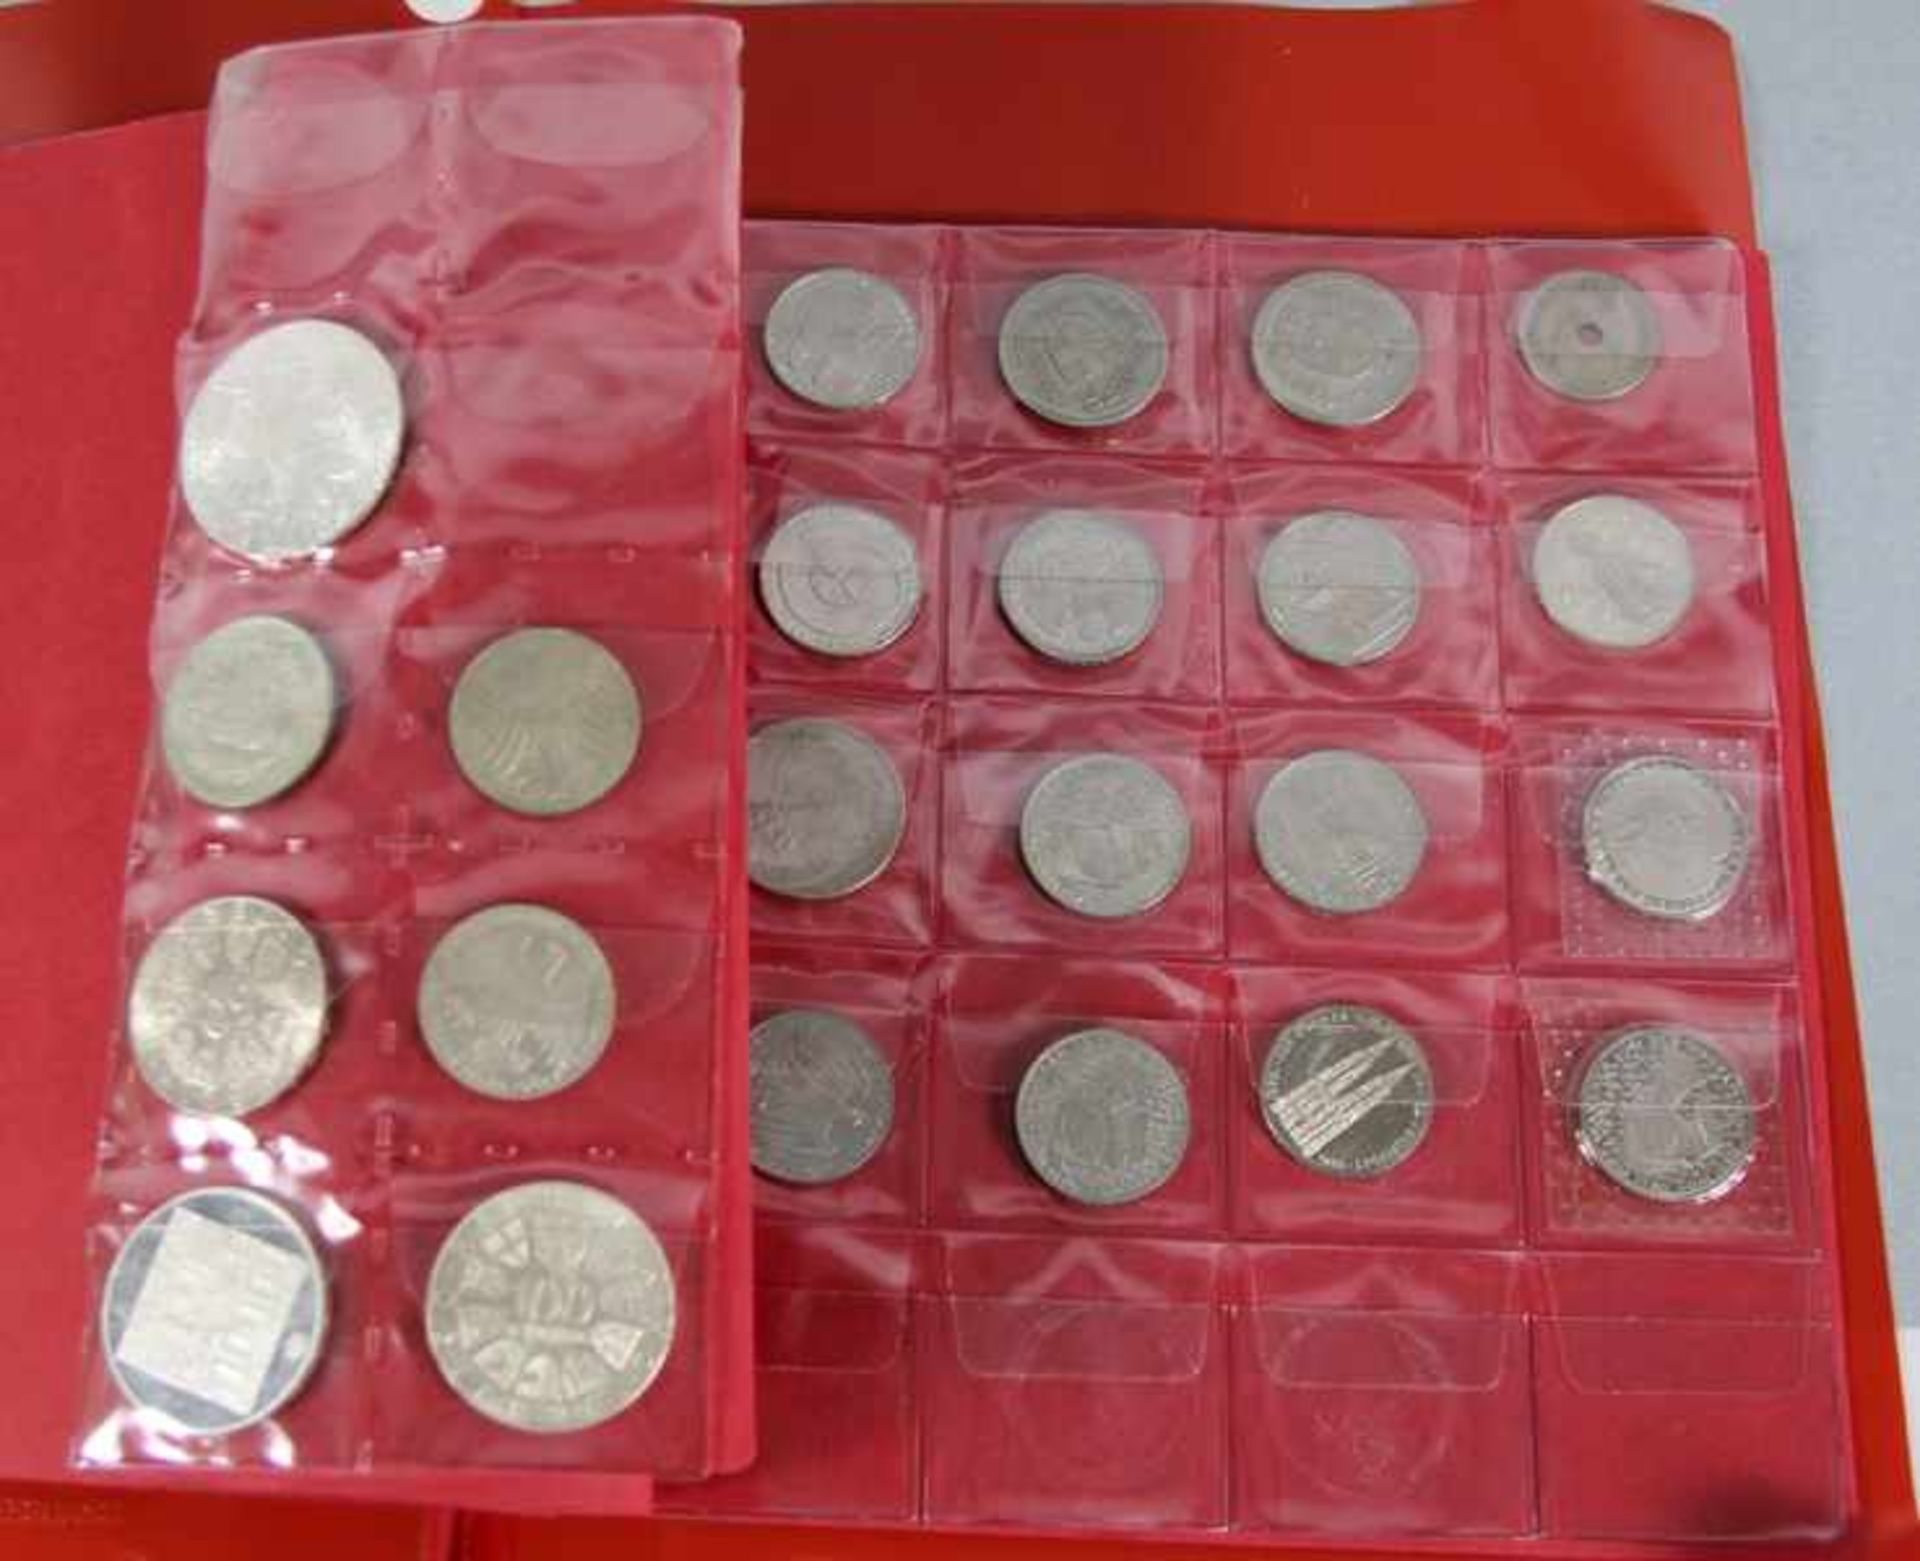 Konvolut Münzenca. 55 Stk.Münzen, davon 14 Silbermünzen: 1 Maria-Thersien-Taler, 1 Medaille Mondflug